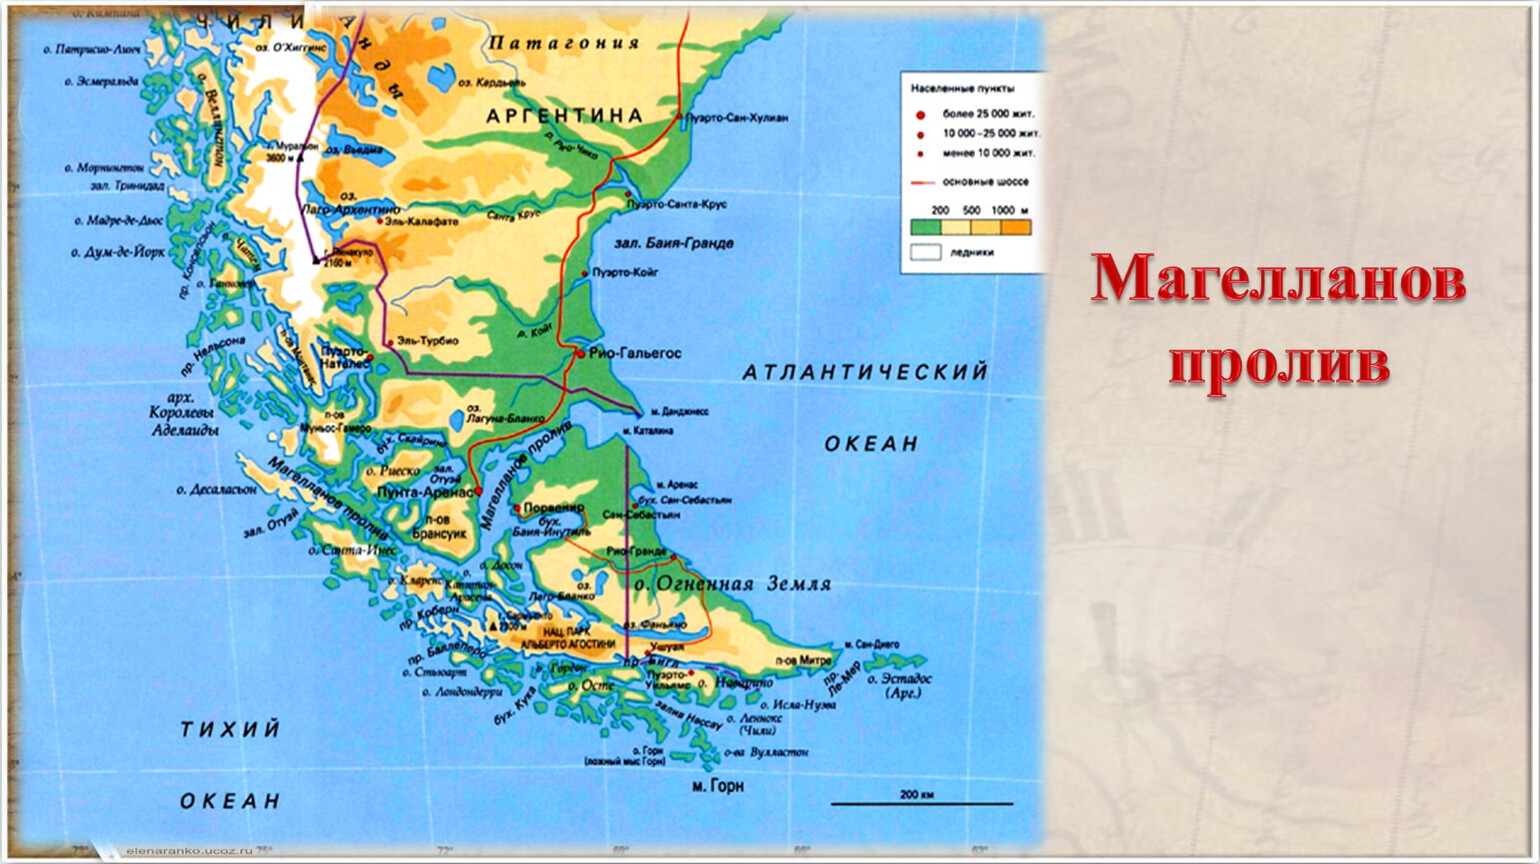 Дал название архипелаг огненная земля. Магелланов пролив и Огненная земля. Огненная земля Магеллан. Магелланов пролив на карте. Южная Америка Магелланов пролив.